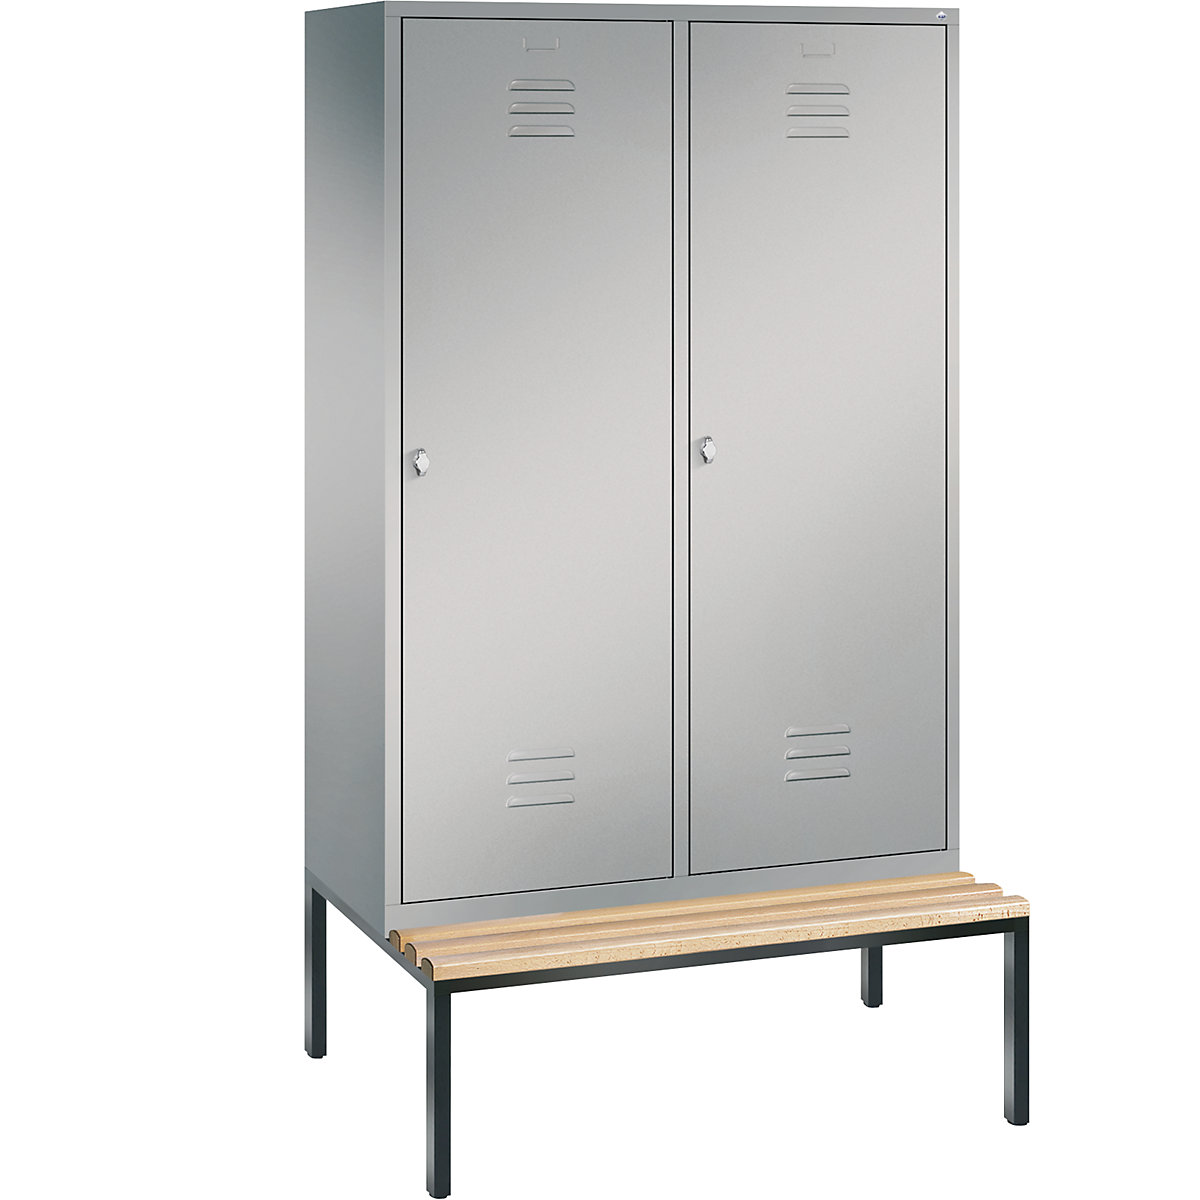 Šatní skříň s podstavnou lavicí CLASSIC s dveřmi přes 2 oddíly – C+P, 4 oddíly, šířka oddílu 300 mm, bílý hliník-7